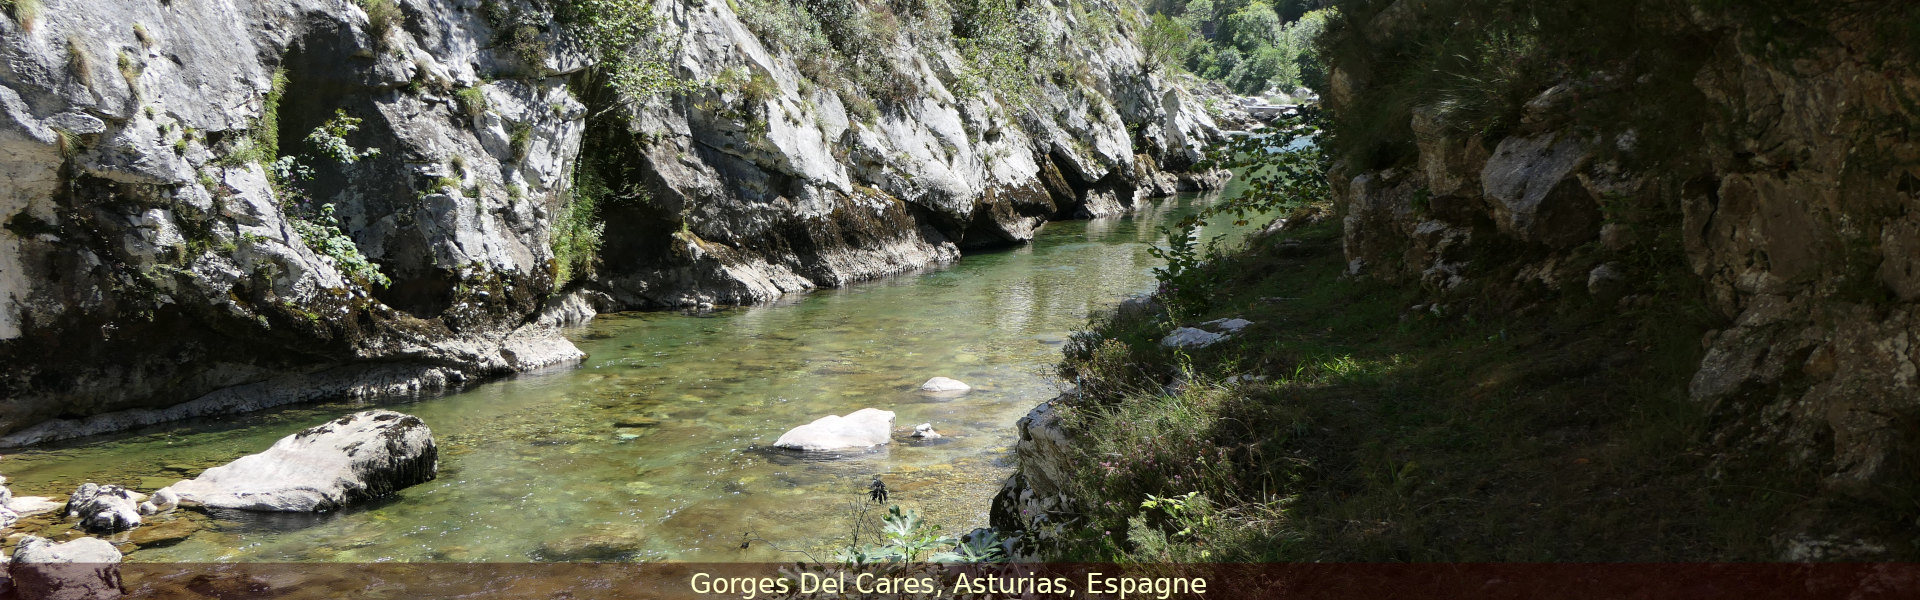 Gorges del Cares, Asturias, Espagne